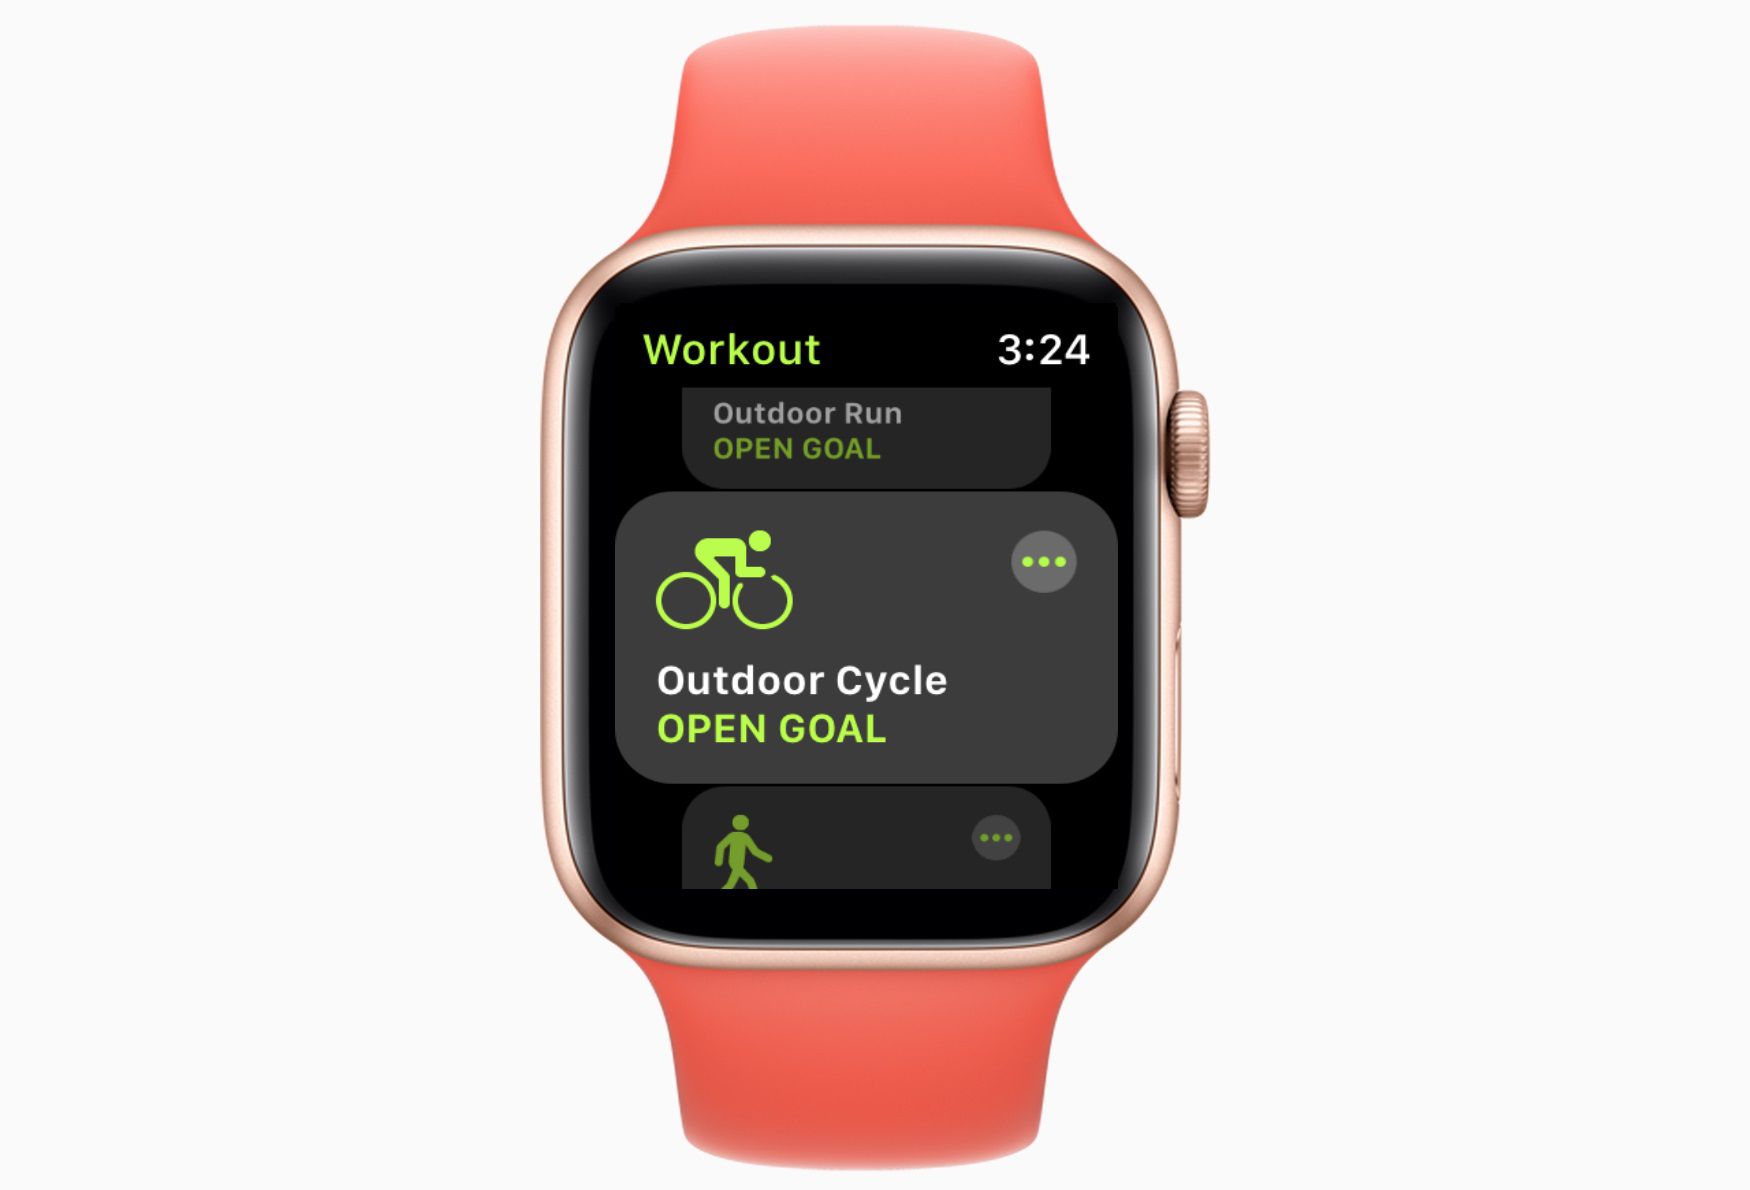 Tela de treino do Apple Watch com Outdoor Cycle na tela